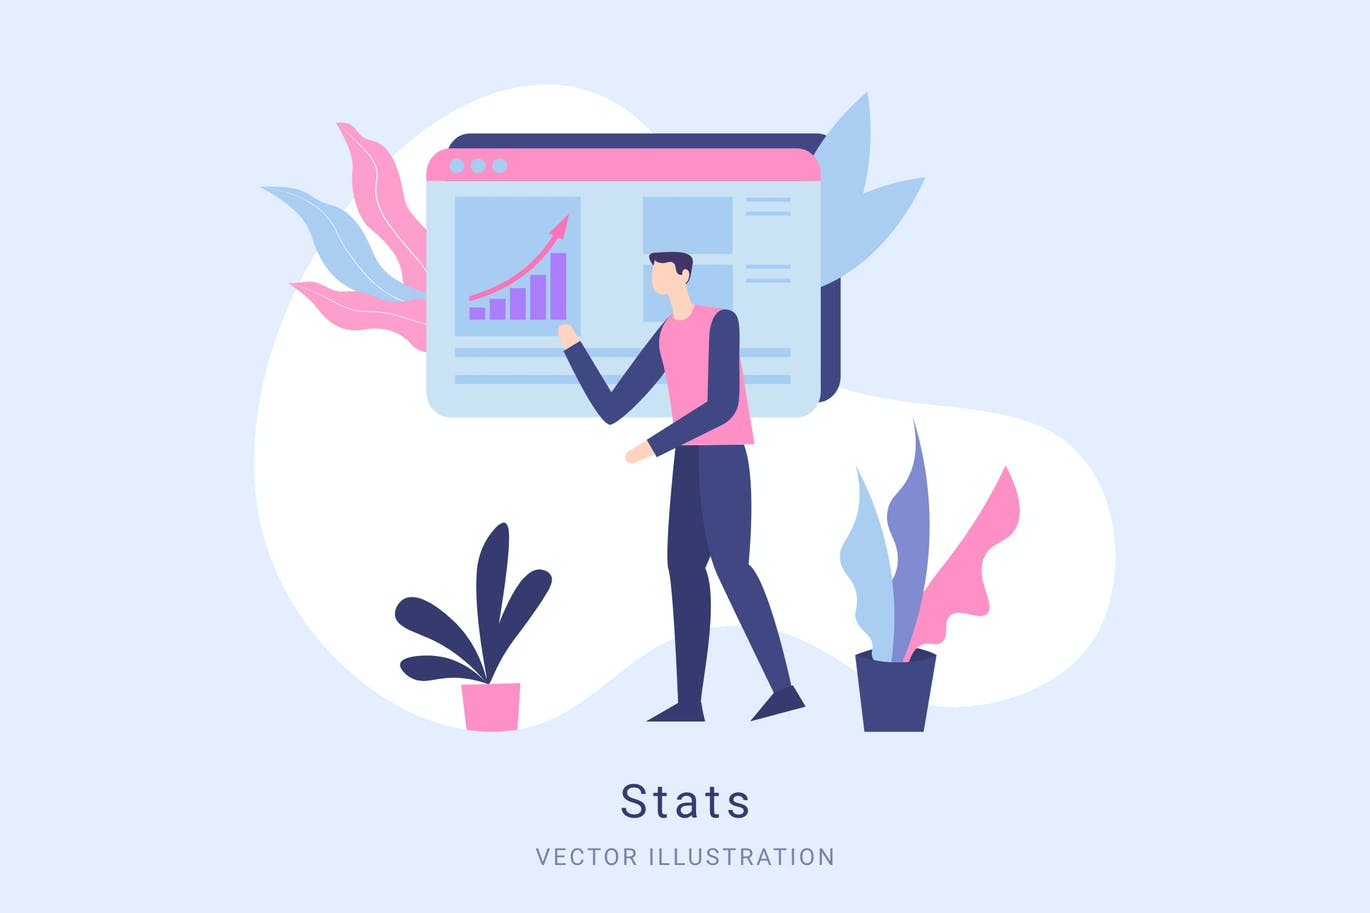 数据统计矢量蚂蚁素材精选概念插画设计素材 Stats Vector Illustration Scene插图